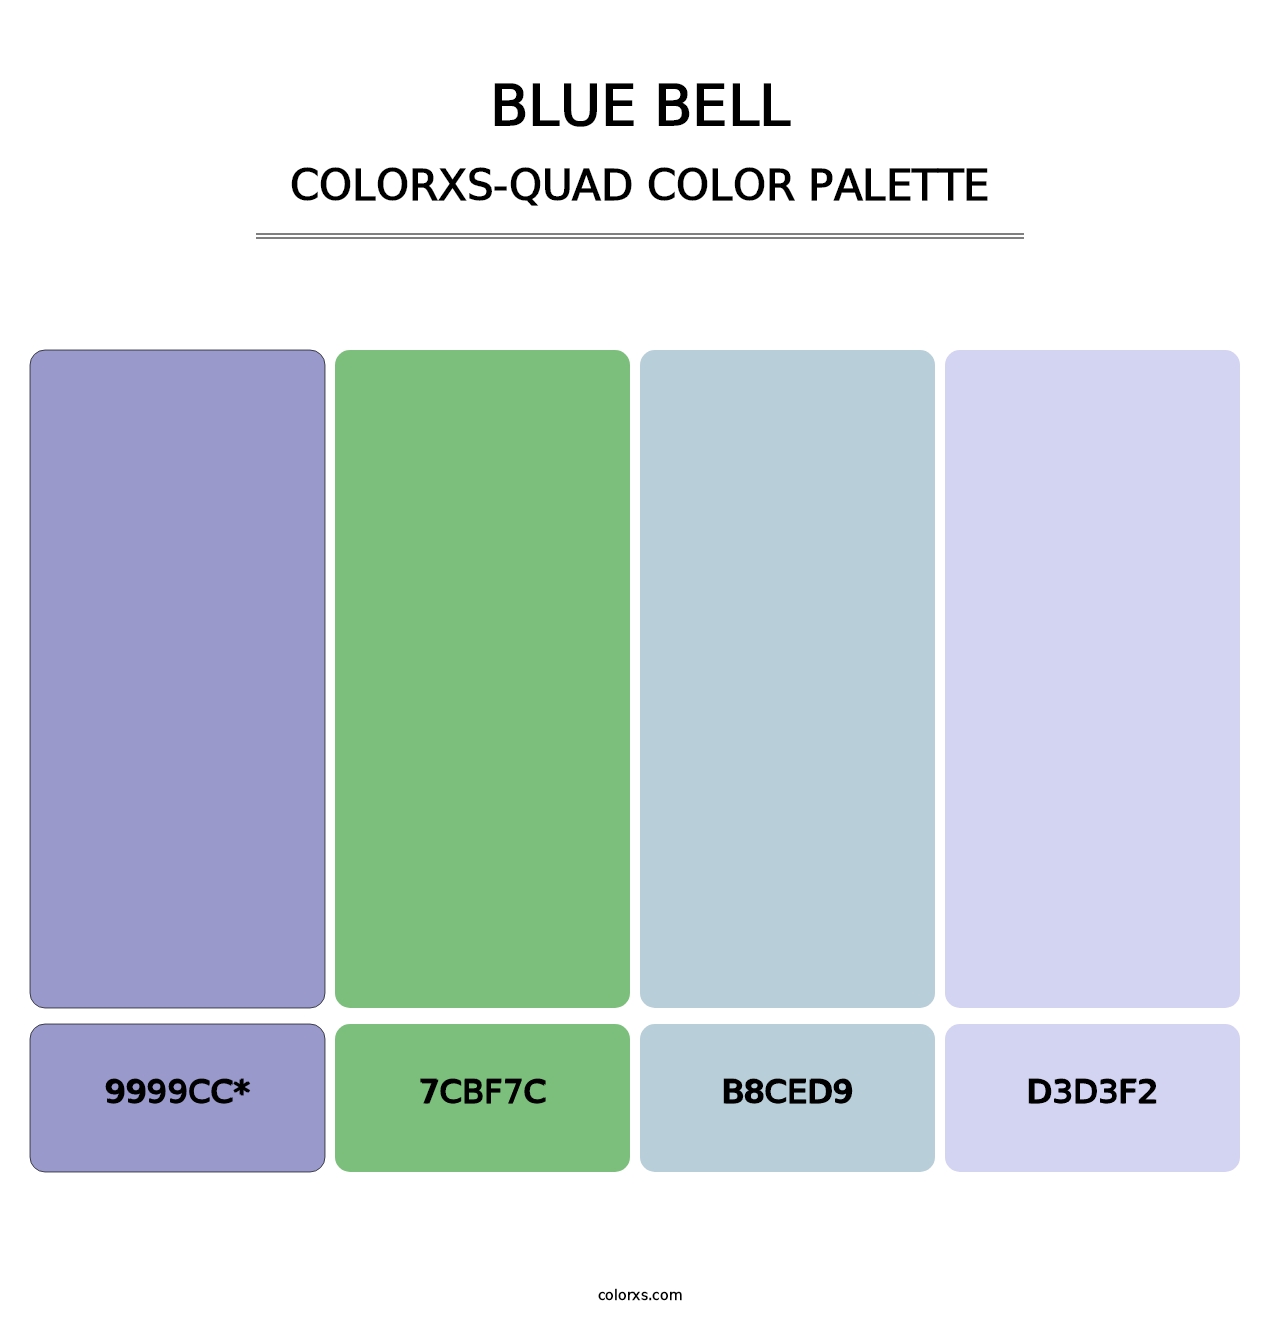 Blue Bell - Colorxs Quad Palette